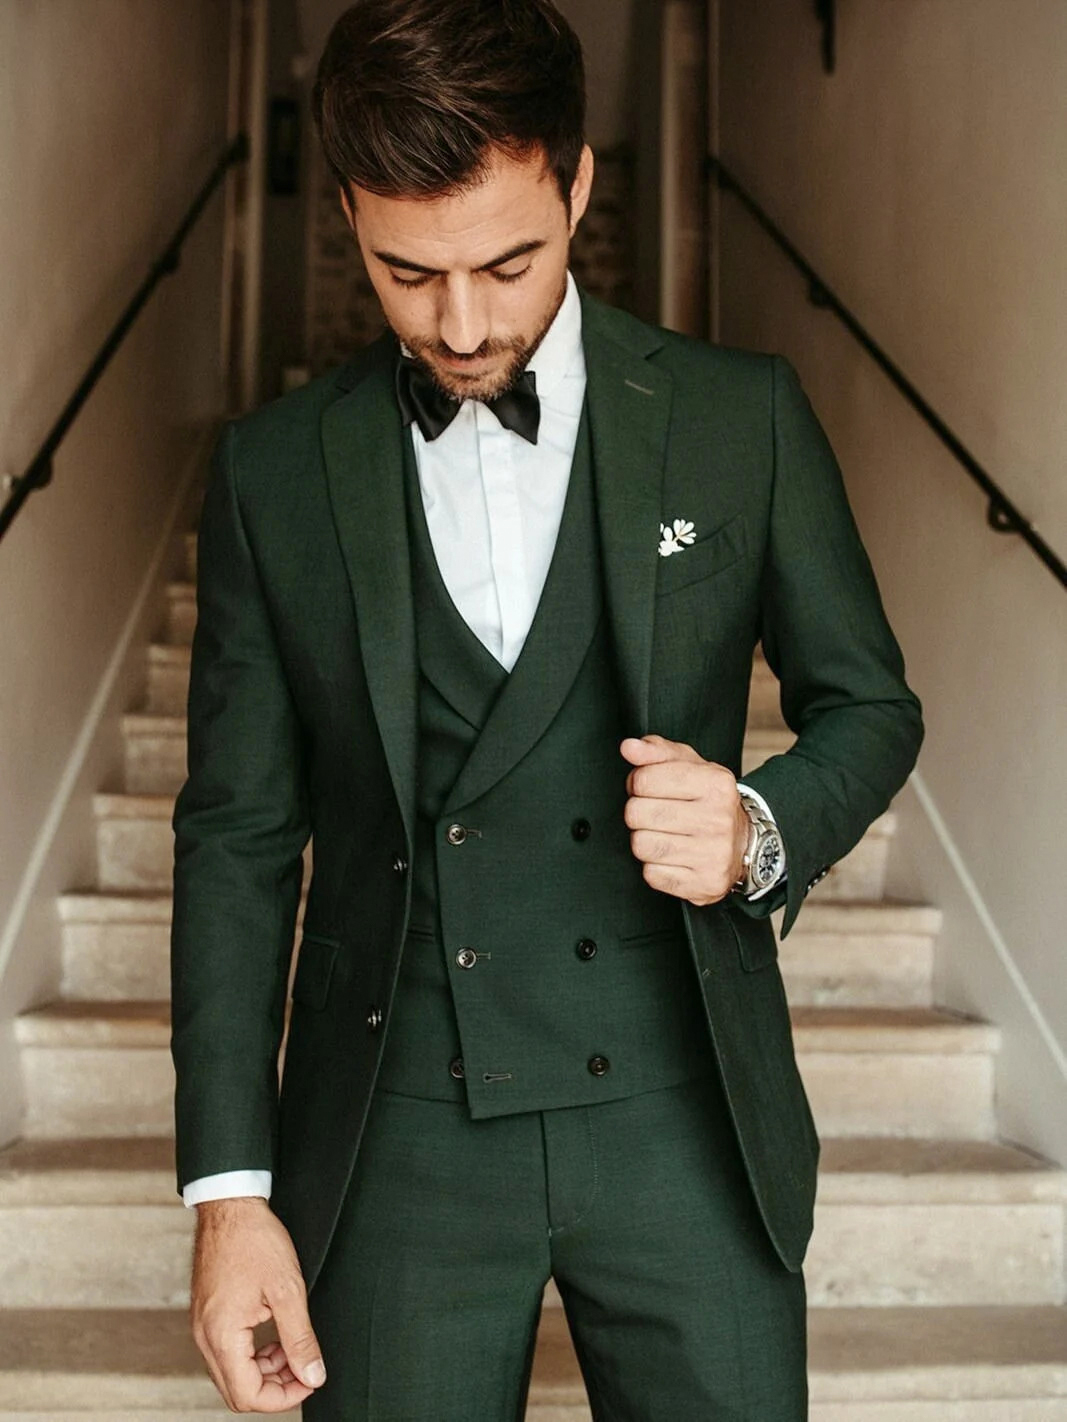 Preserve 206+ dark green suit combinations